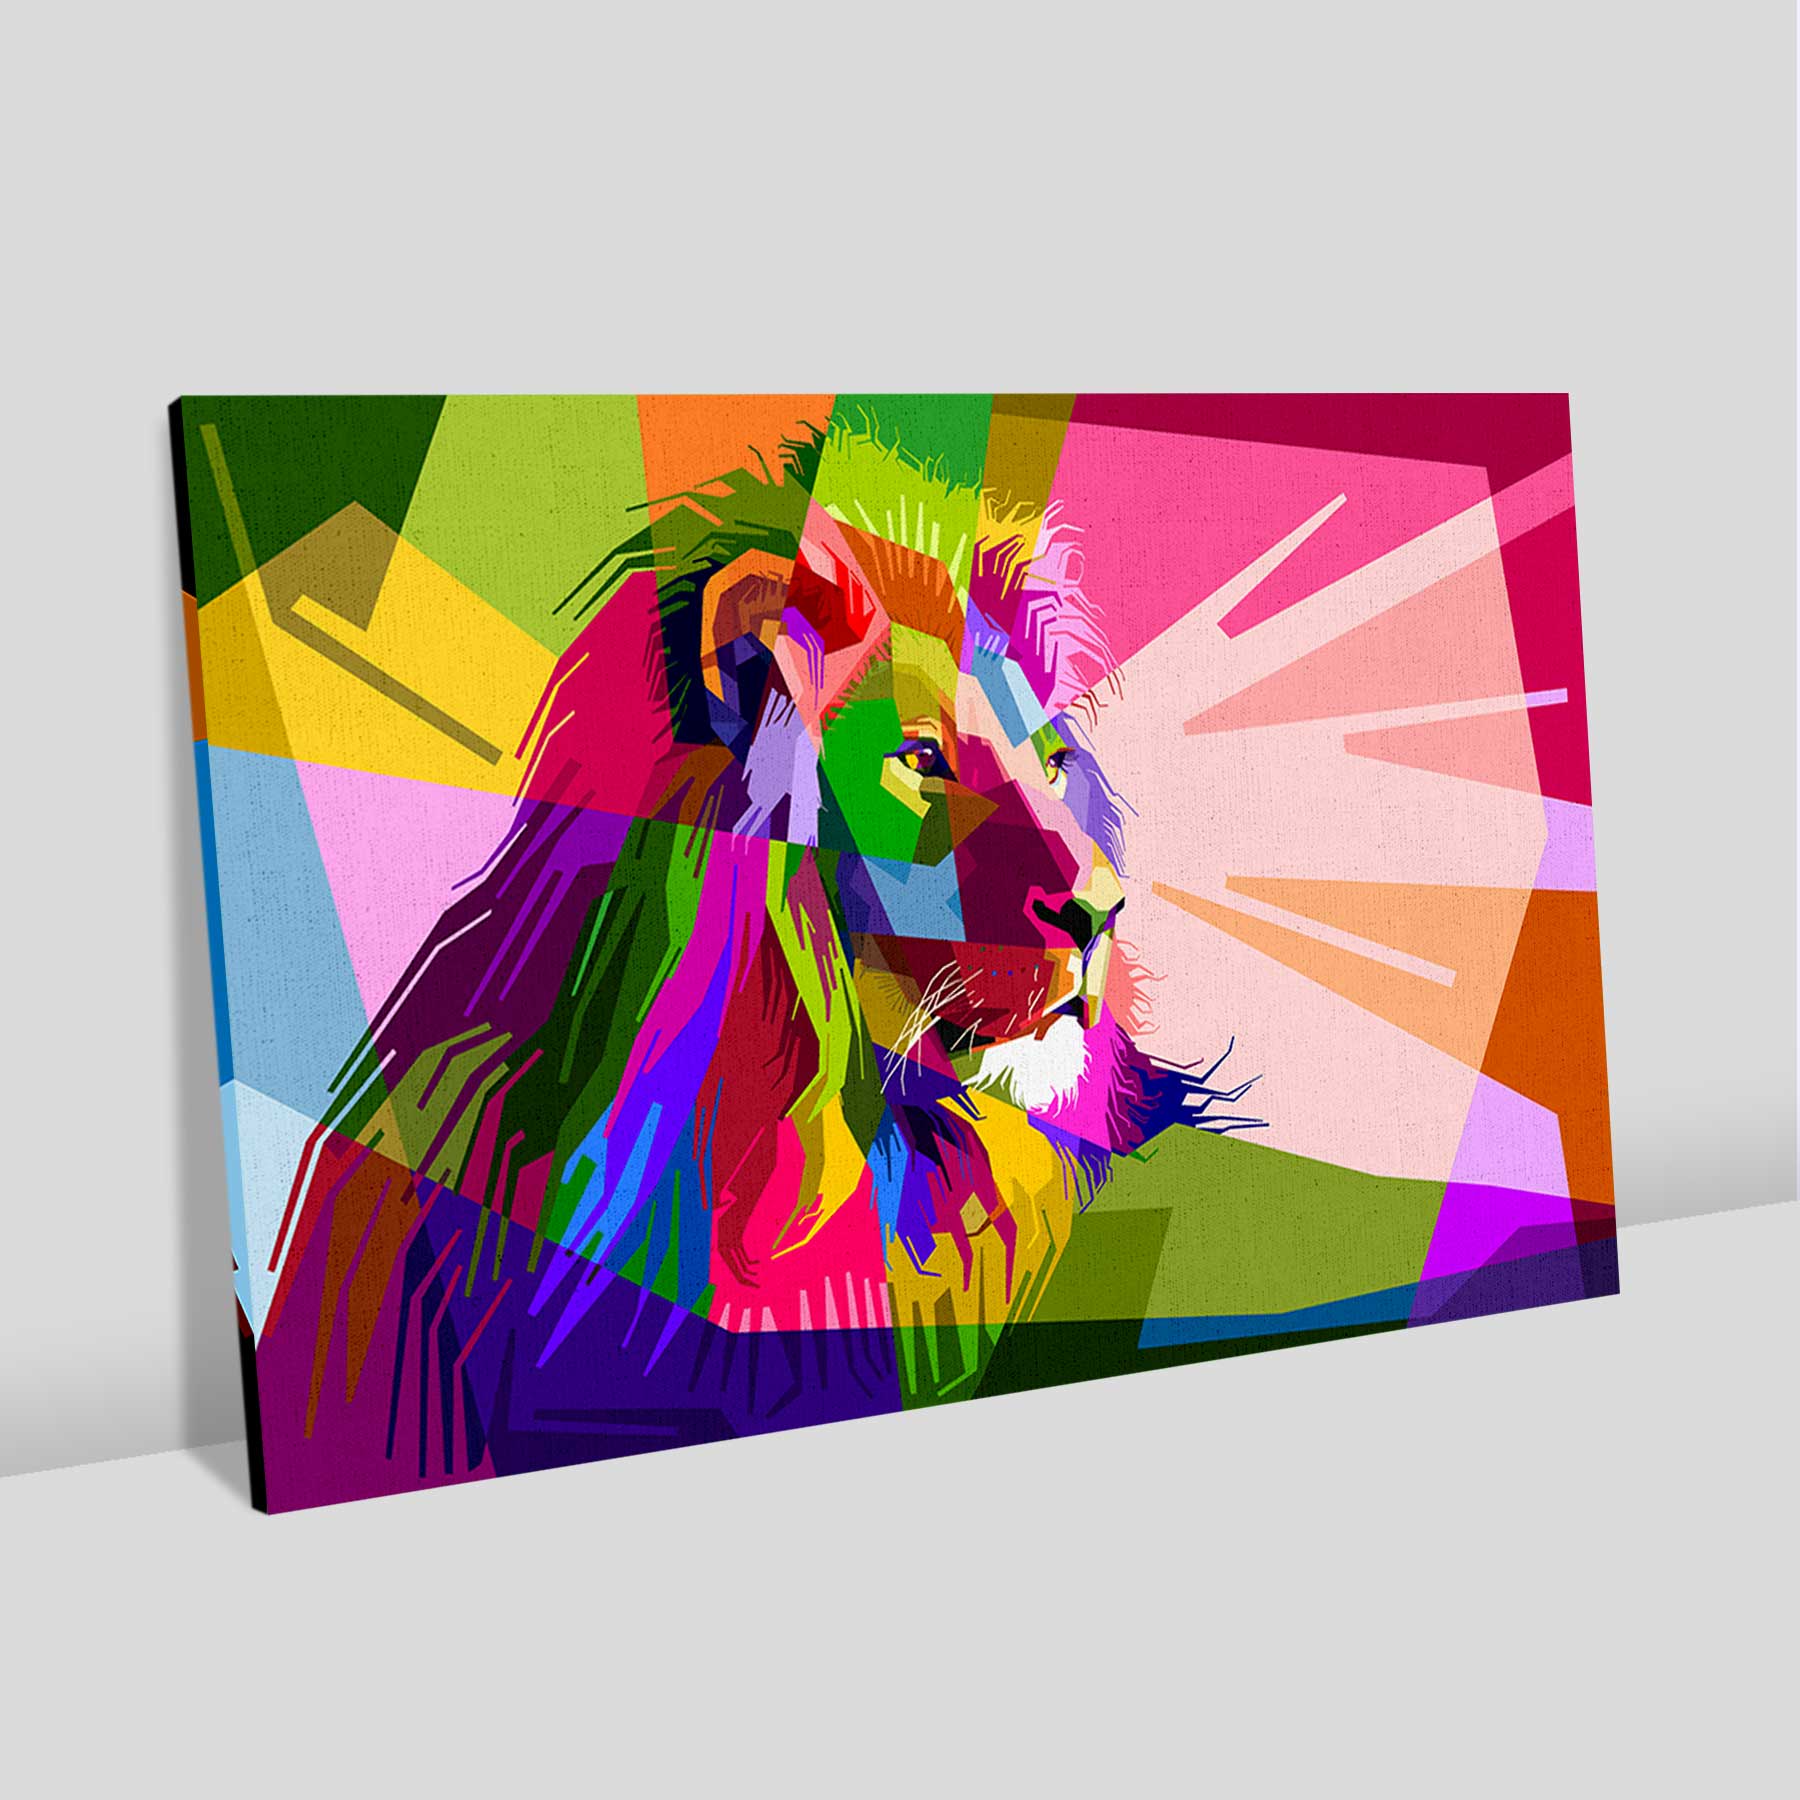 Quadro Retangular  - Leão Ilustração Colorido